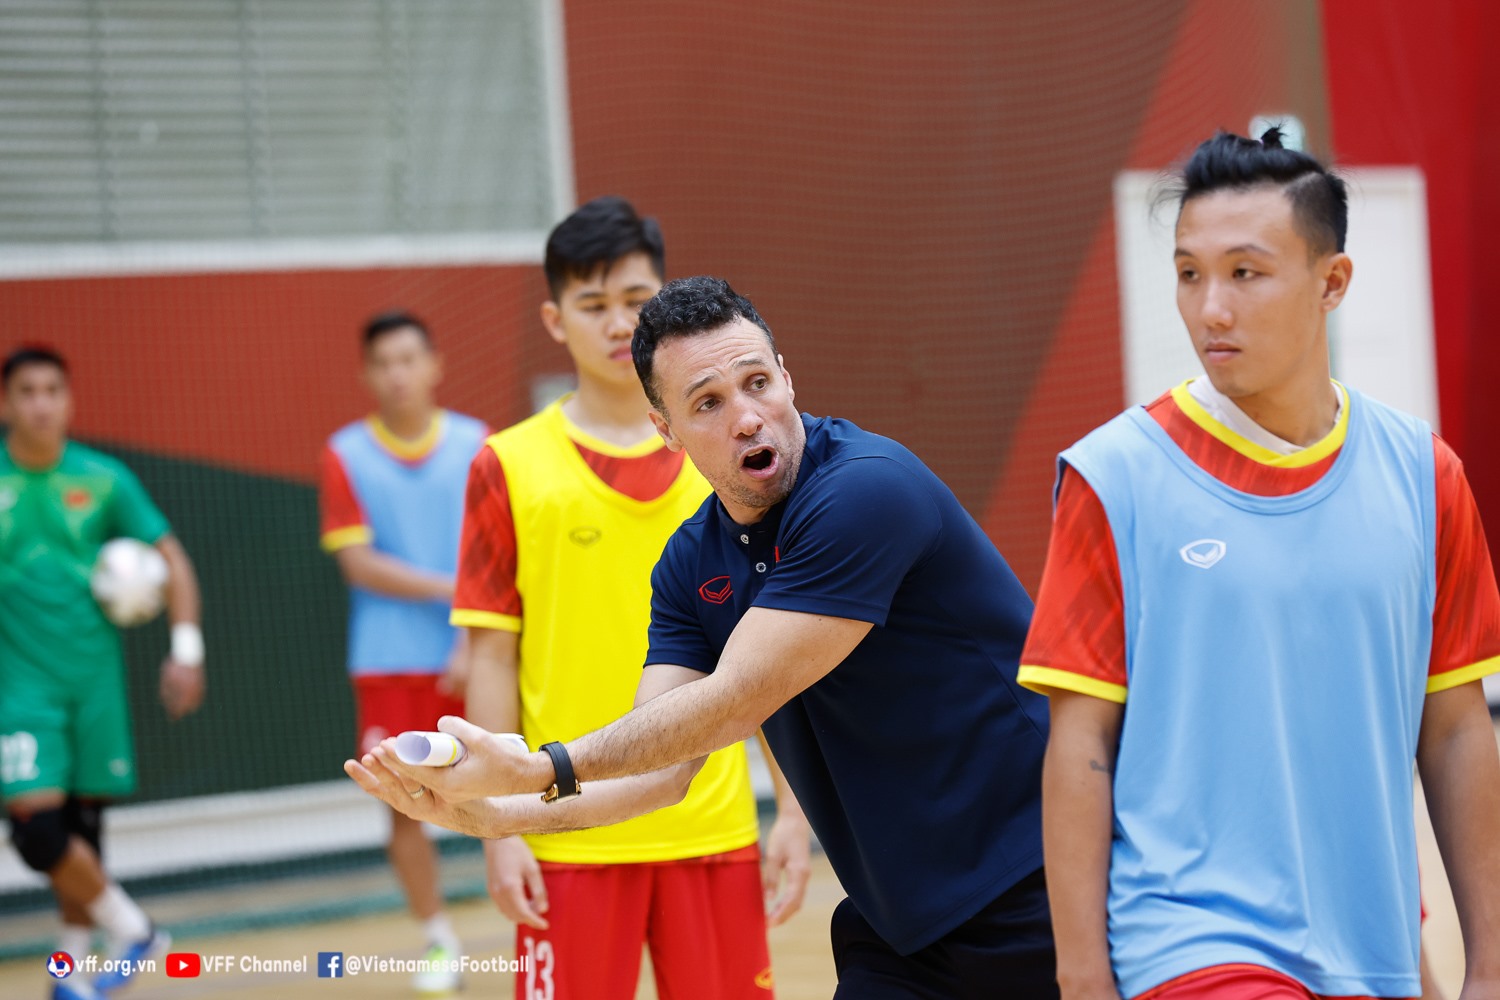 Huấn luyện viên Giustozzi giúp futsal Việt Nam tiến bộ nhưng vẫn chưa đủ sức để chơi sòng phẳng với Iran. Ảnh: VFF